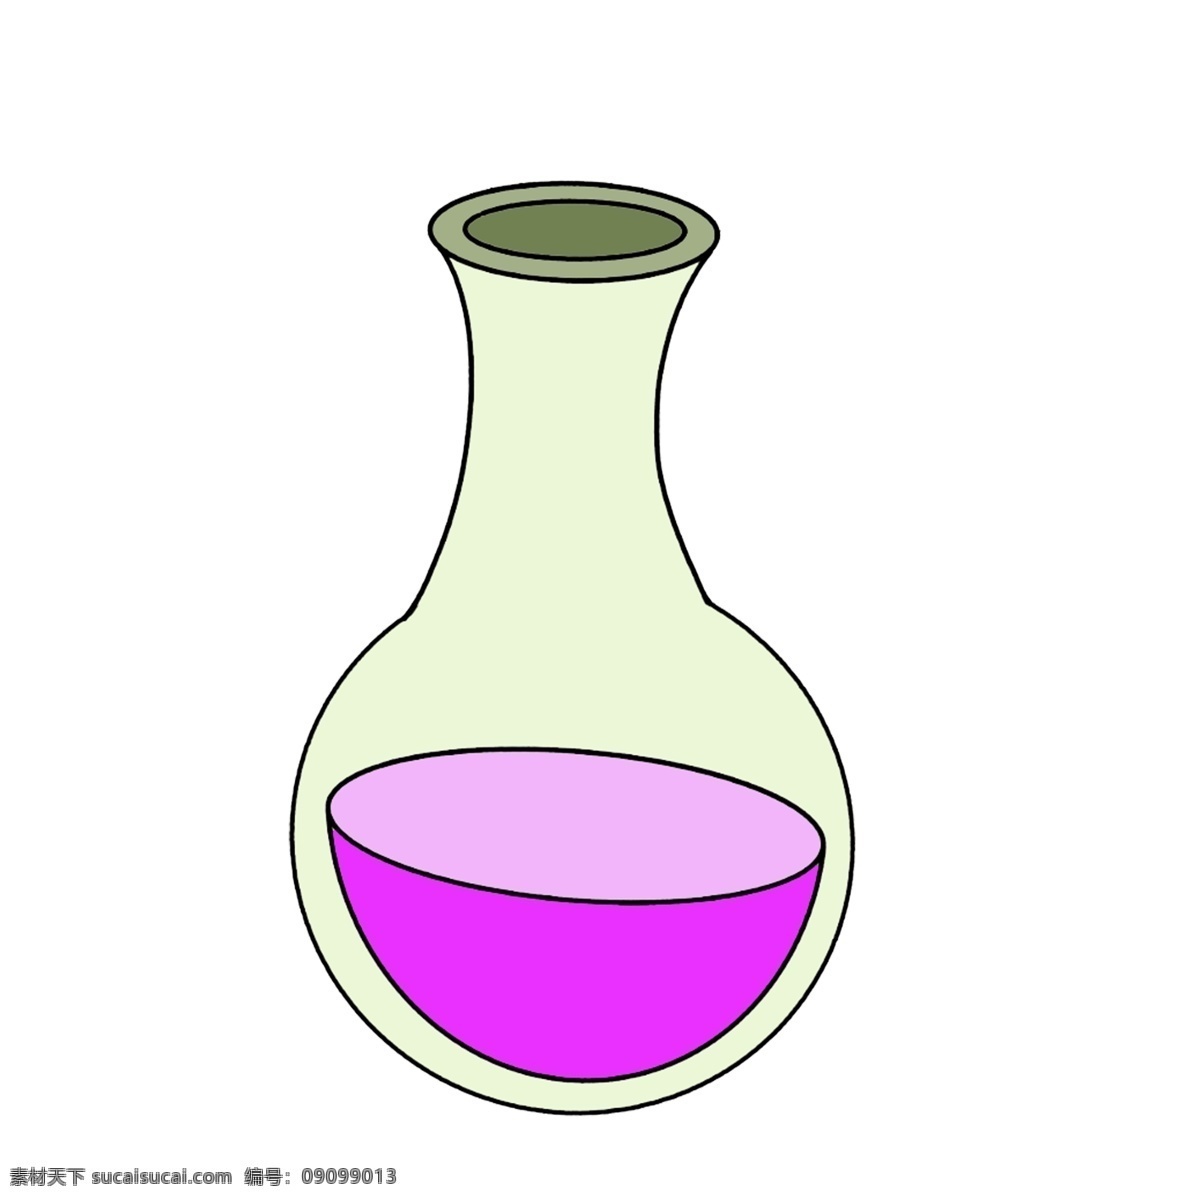 紫色 烧杯 装饰 插画 紫色的烧杯 实验器材烧杯 化学烧杯 漂亮的烧杯 烧杯装饰 烧杯插画 玻璃烧杯